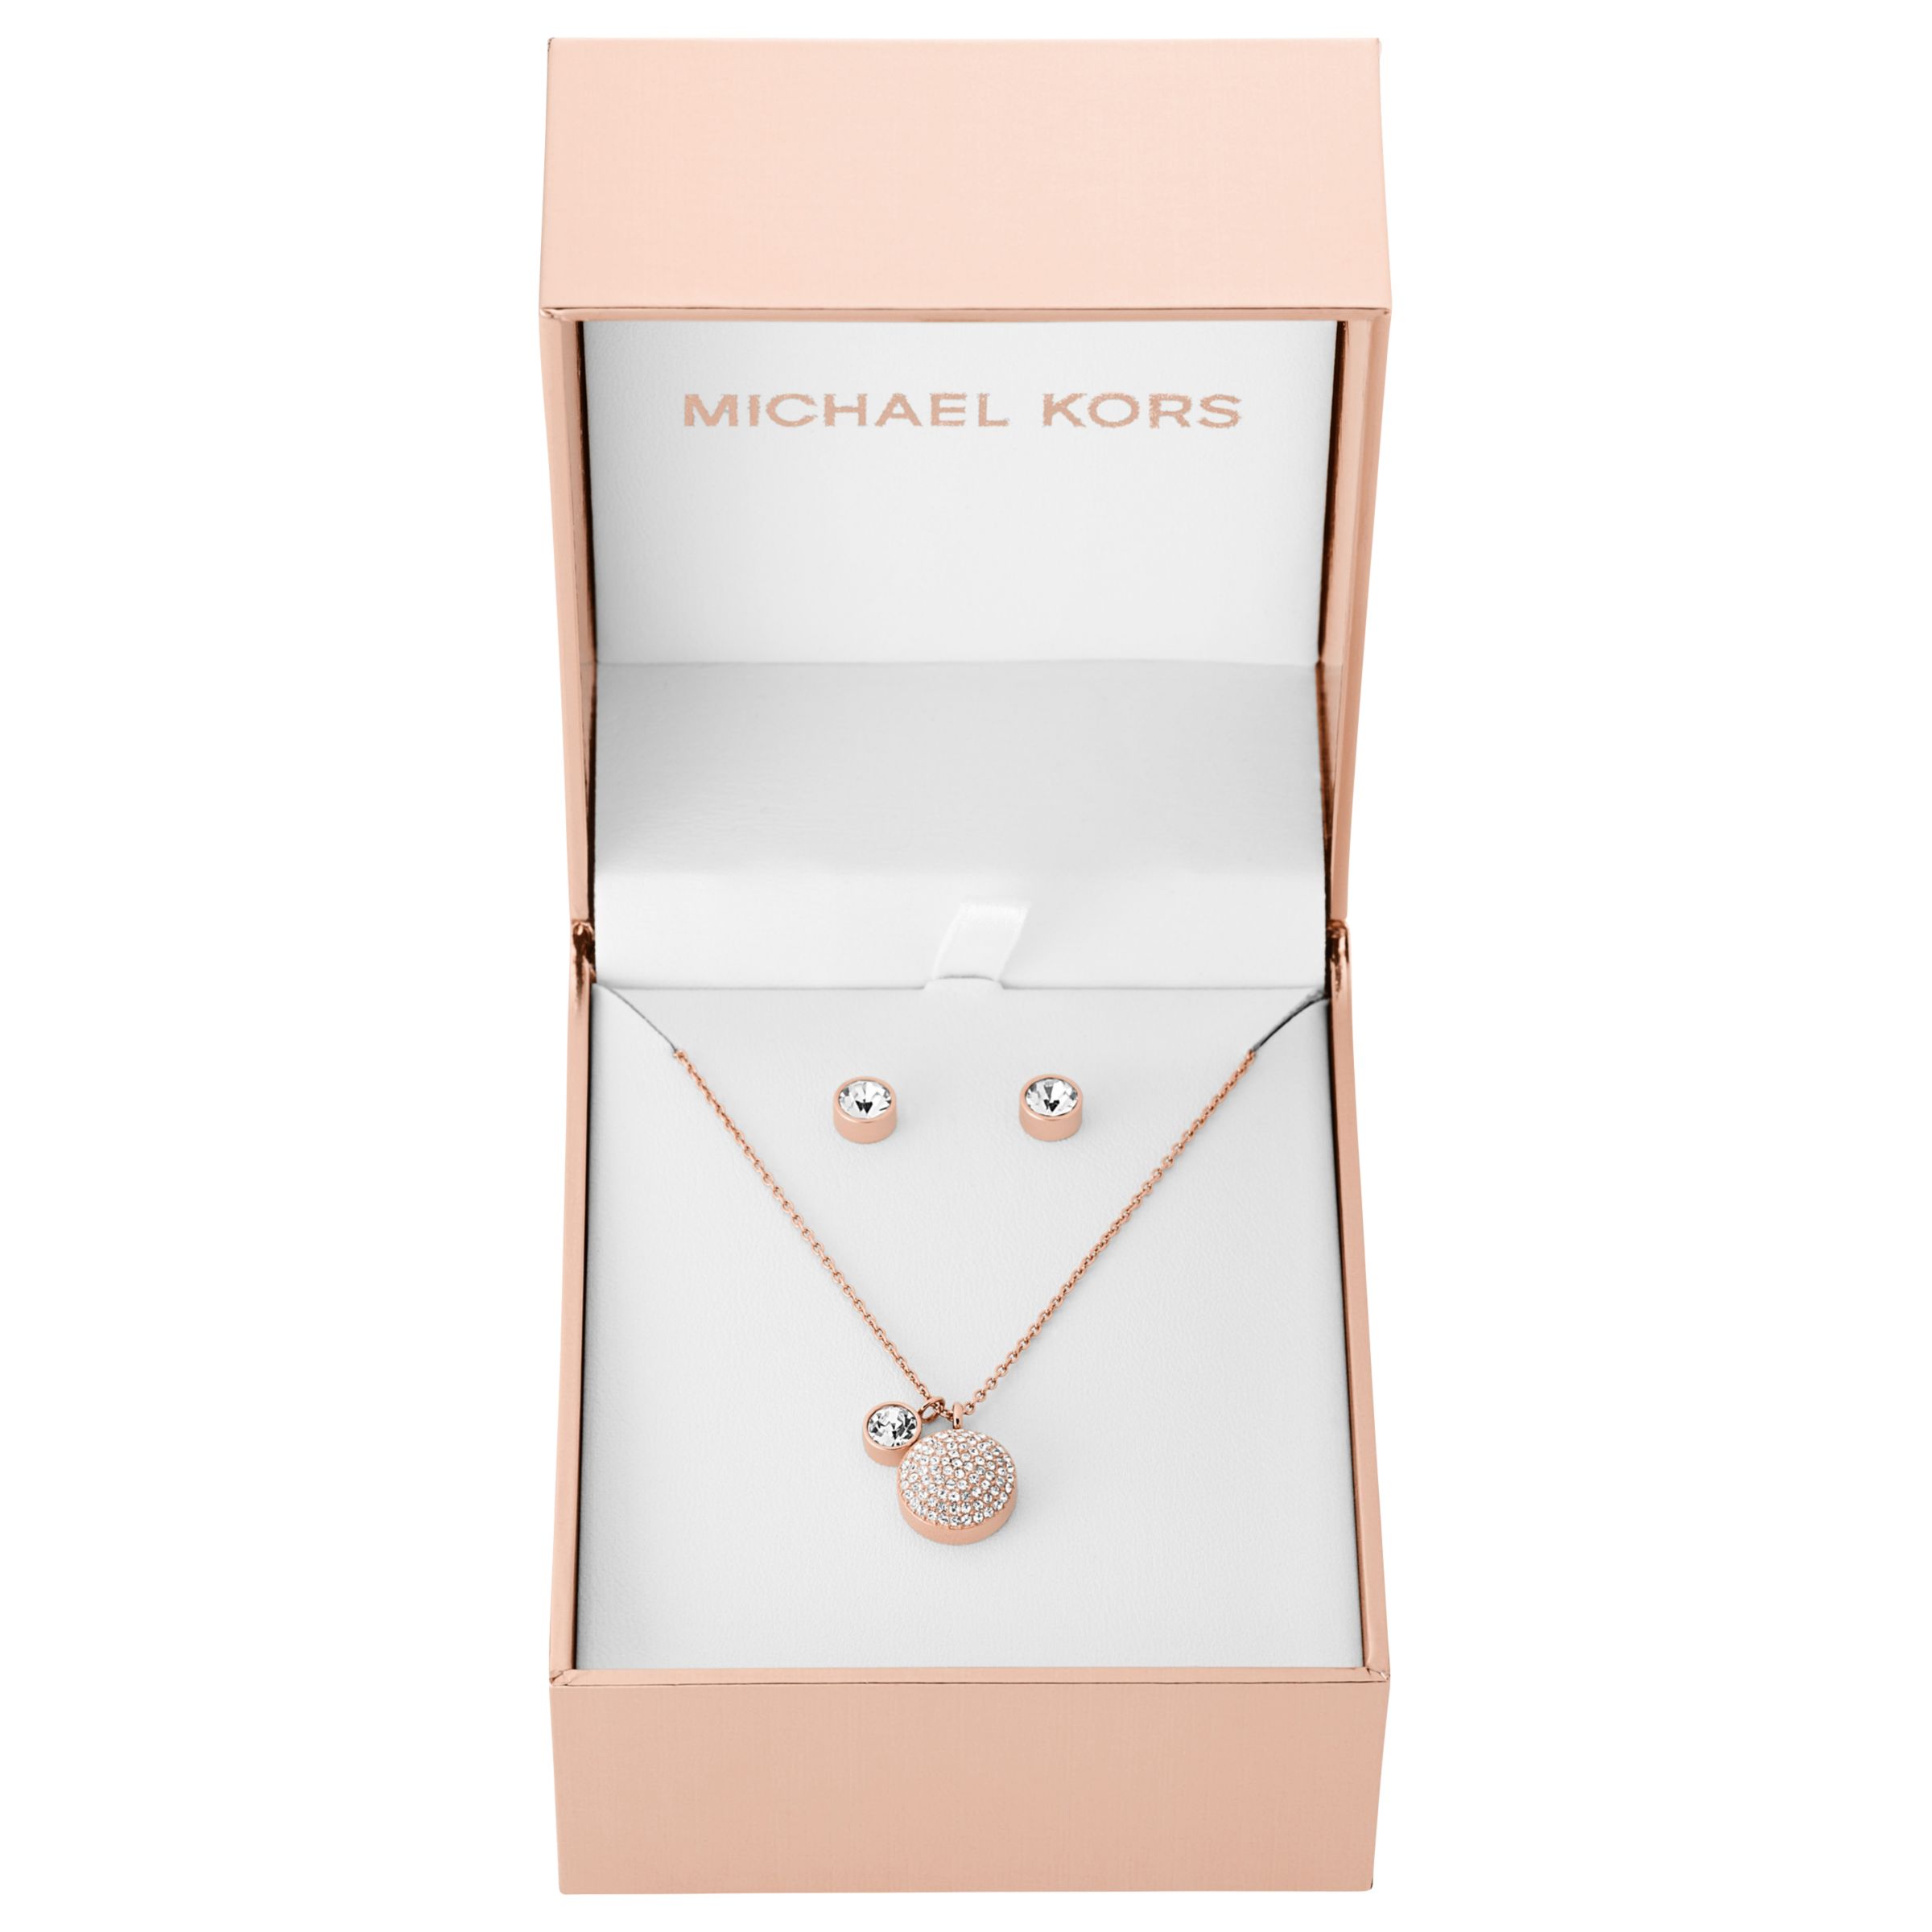 michael kors necklace set